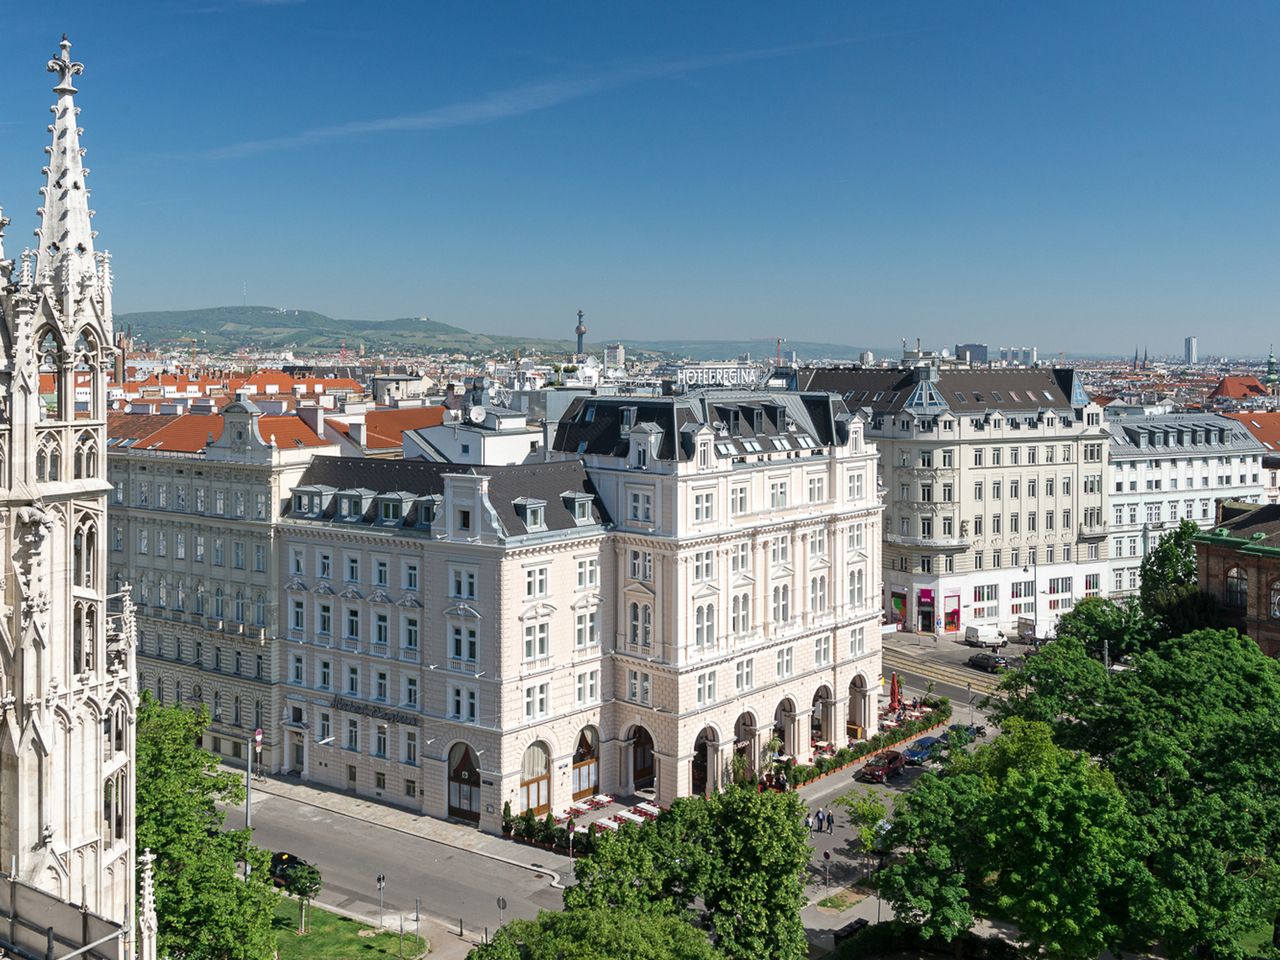 Das wunderschöne Wien erleben - 3 Tage